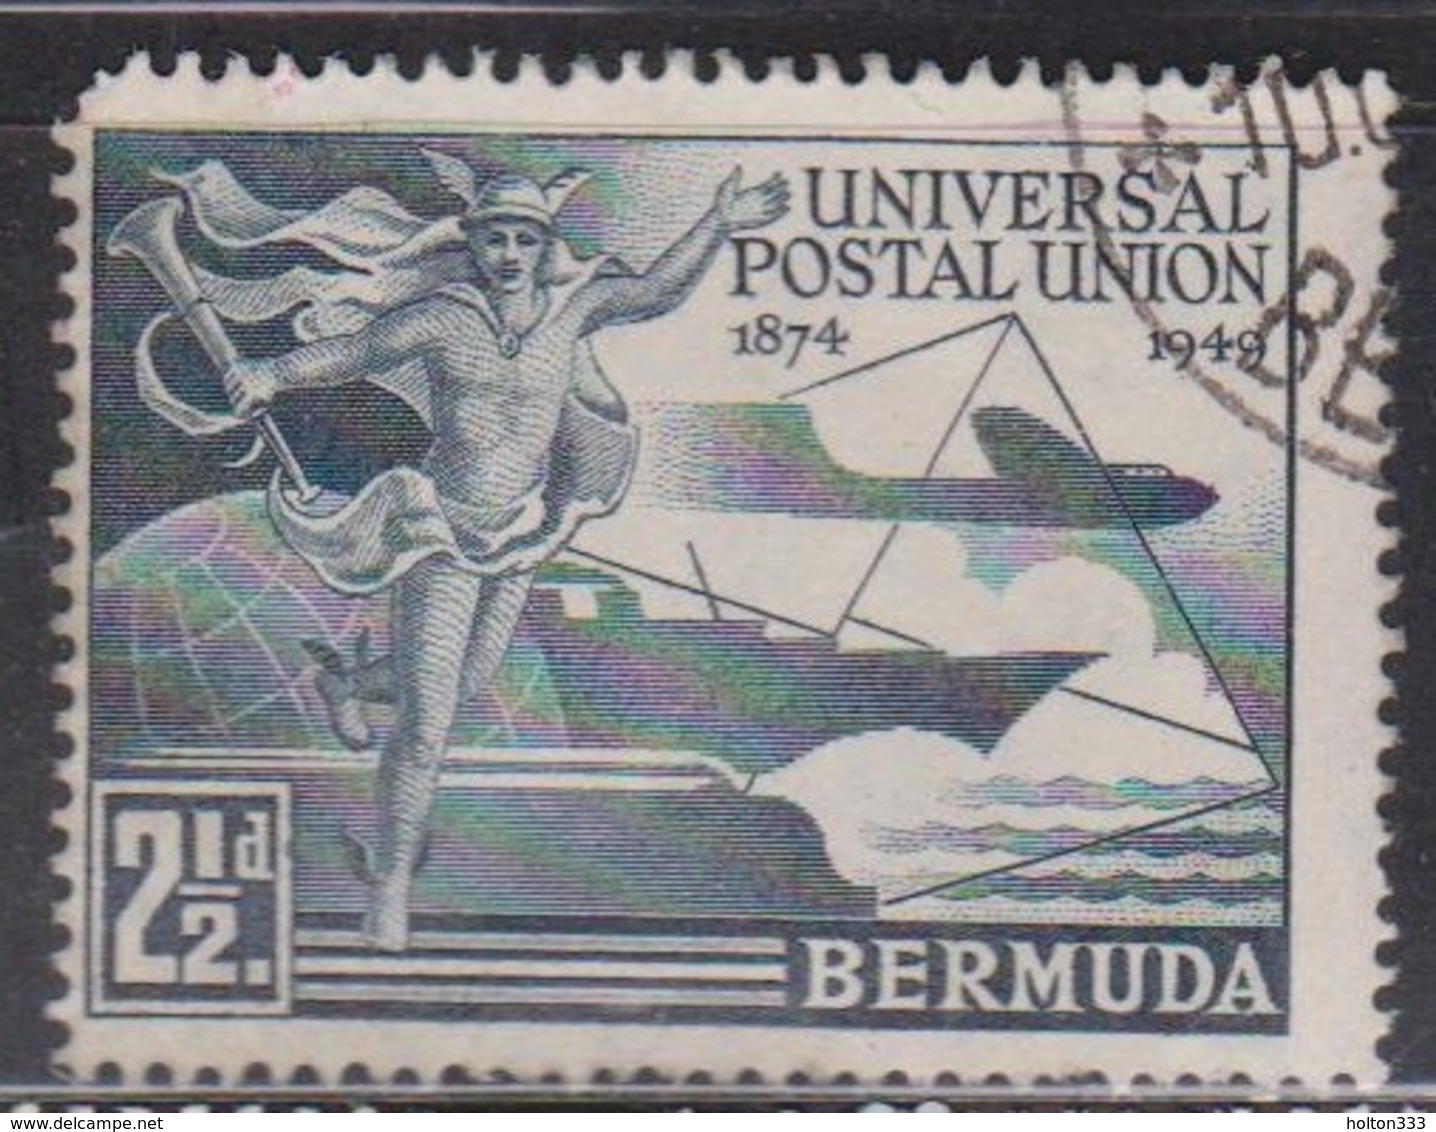 BERMUDA Scott # 138 Used - UPU Issue 1949 - Bermuda